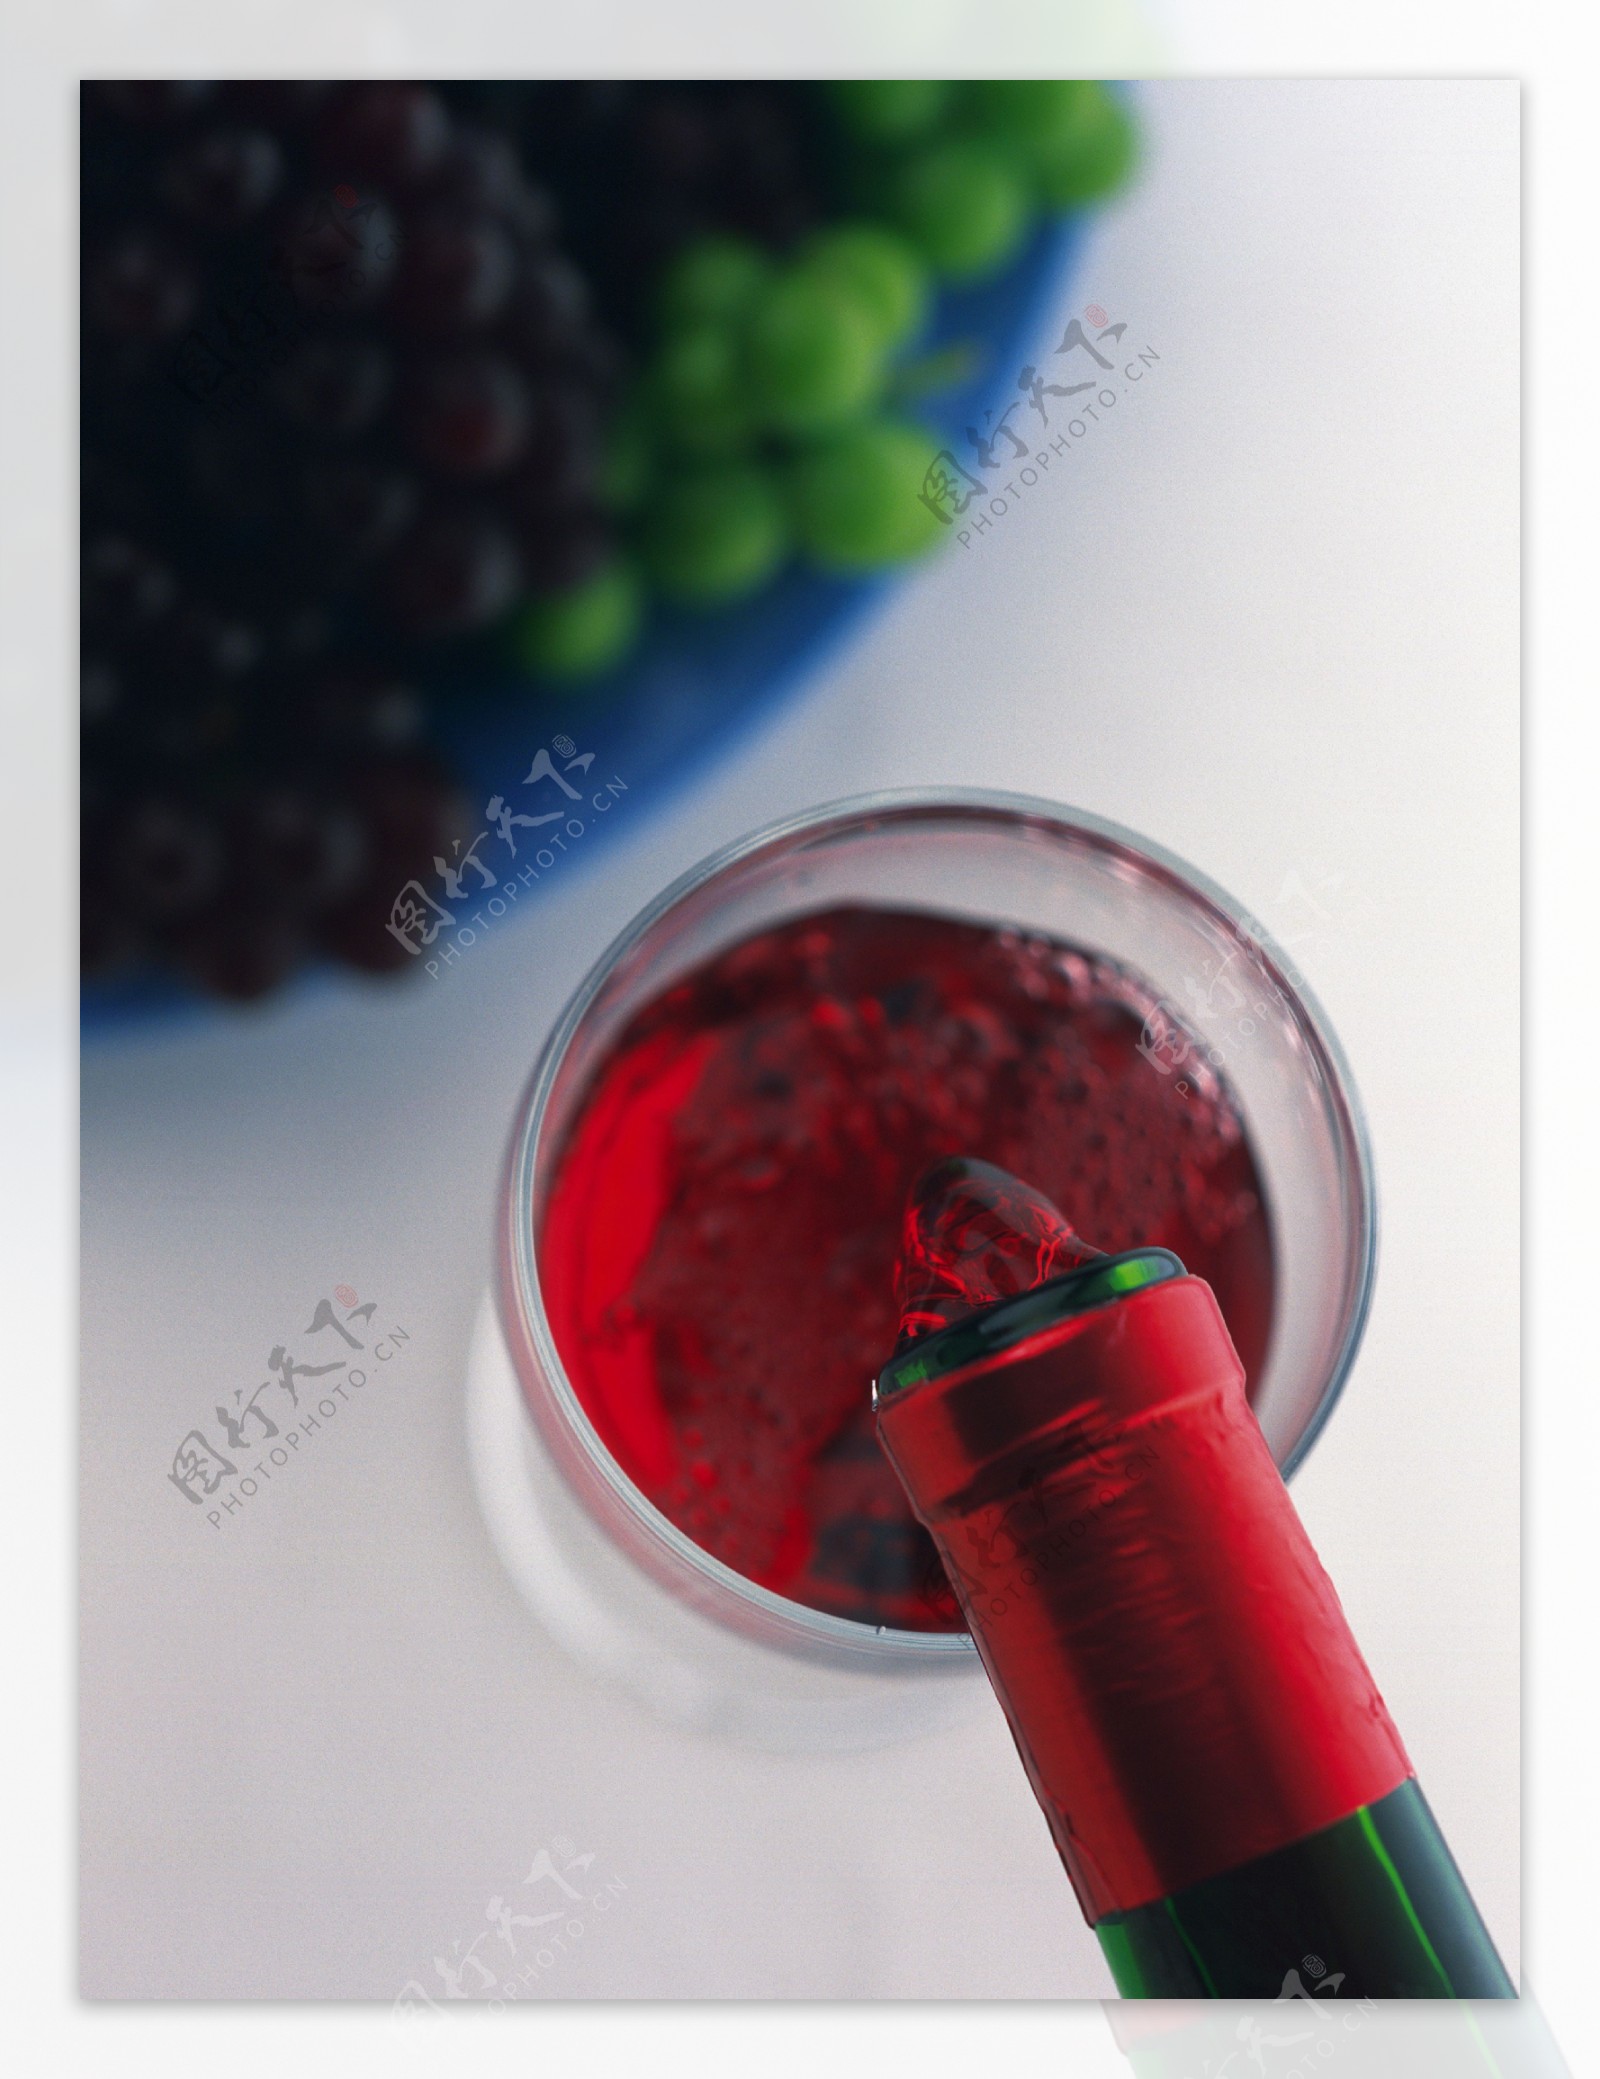 倒入杯中的红酒俯视图特写图片图片